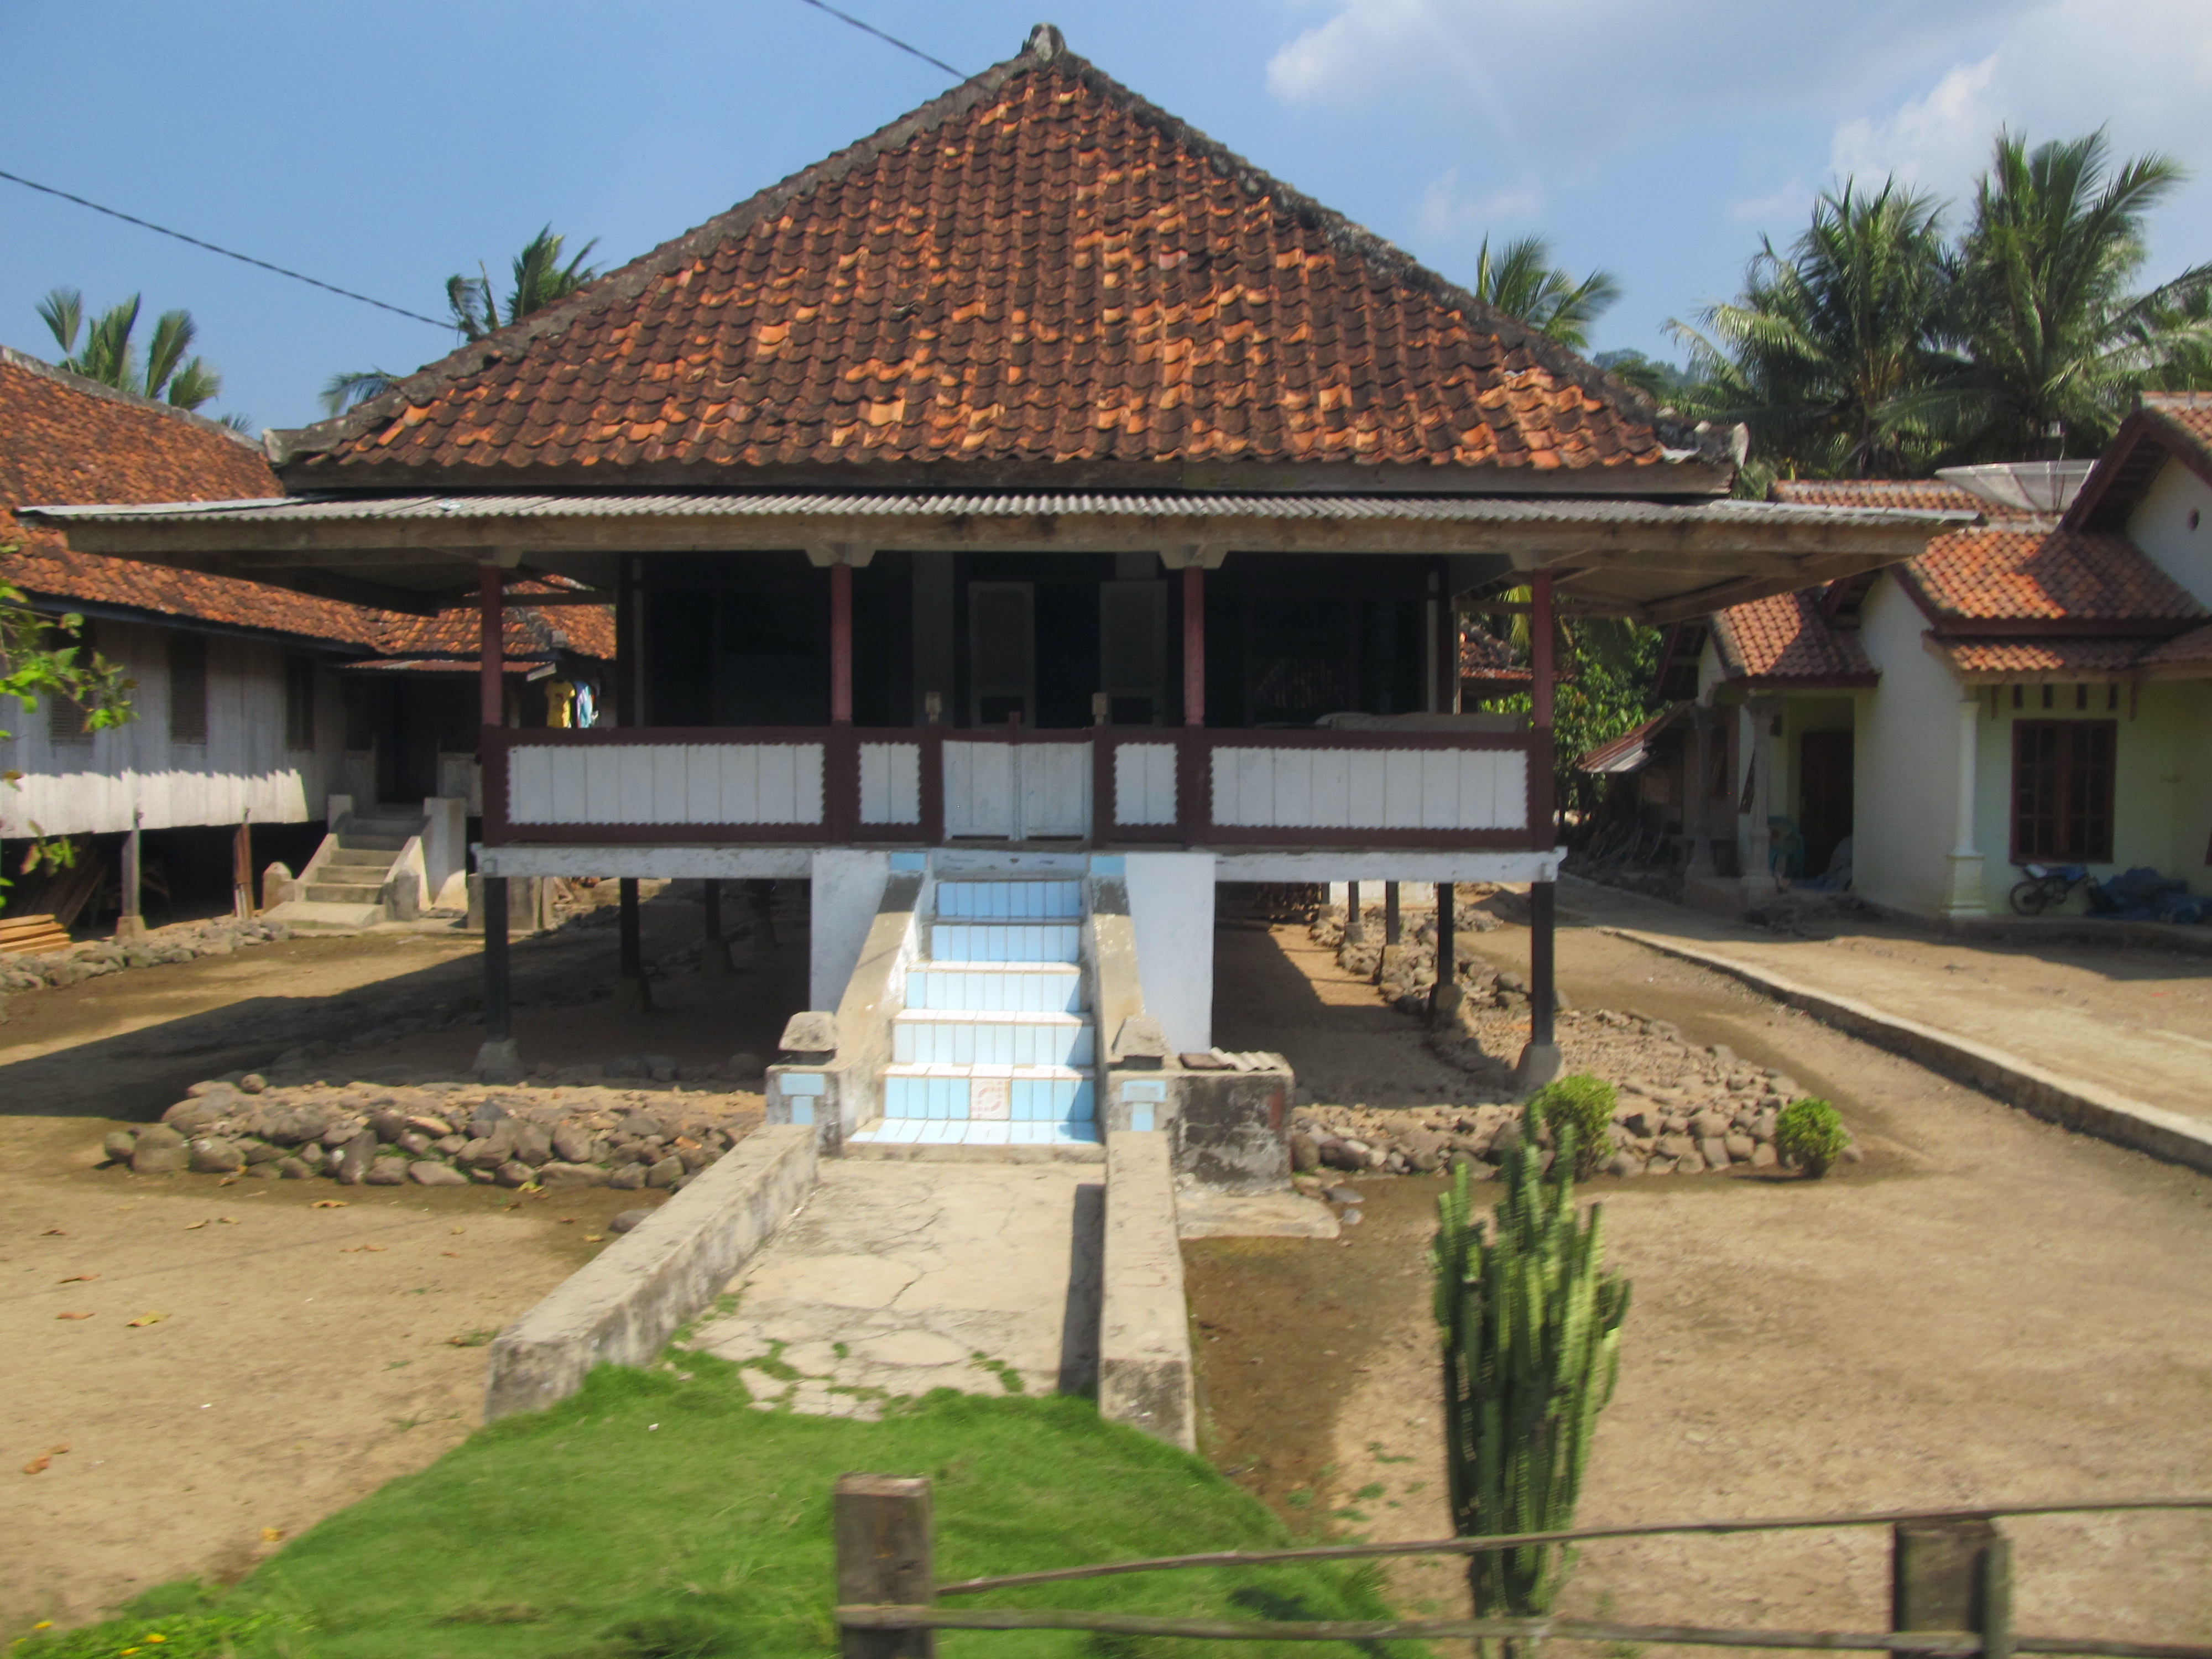 Rumah panggung sederhana yang menjadi ciri khas kampung-kampung 